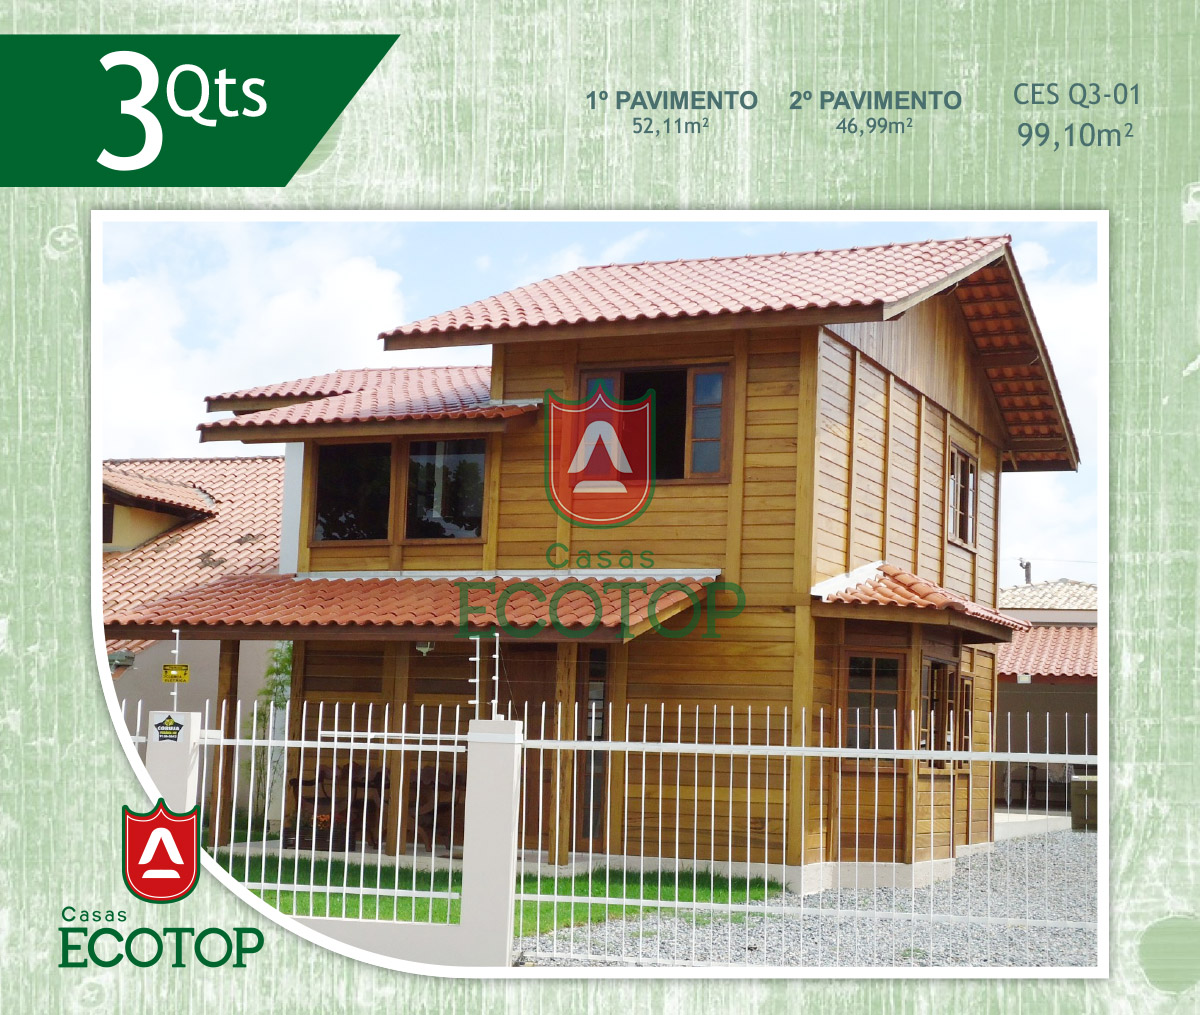 ces-01-fachada-casas-de-madeira-ecotop.cdr